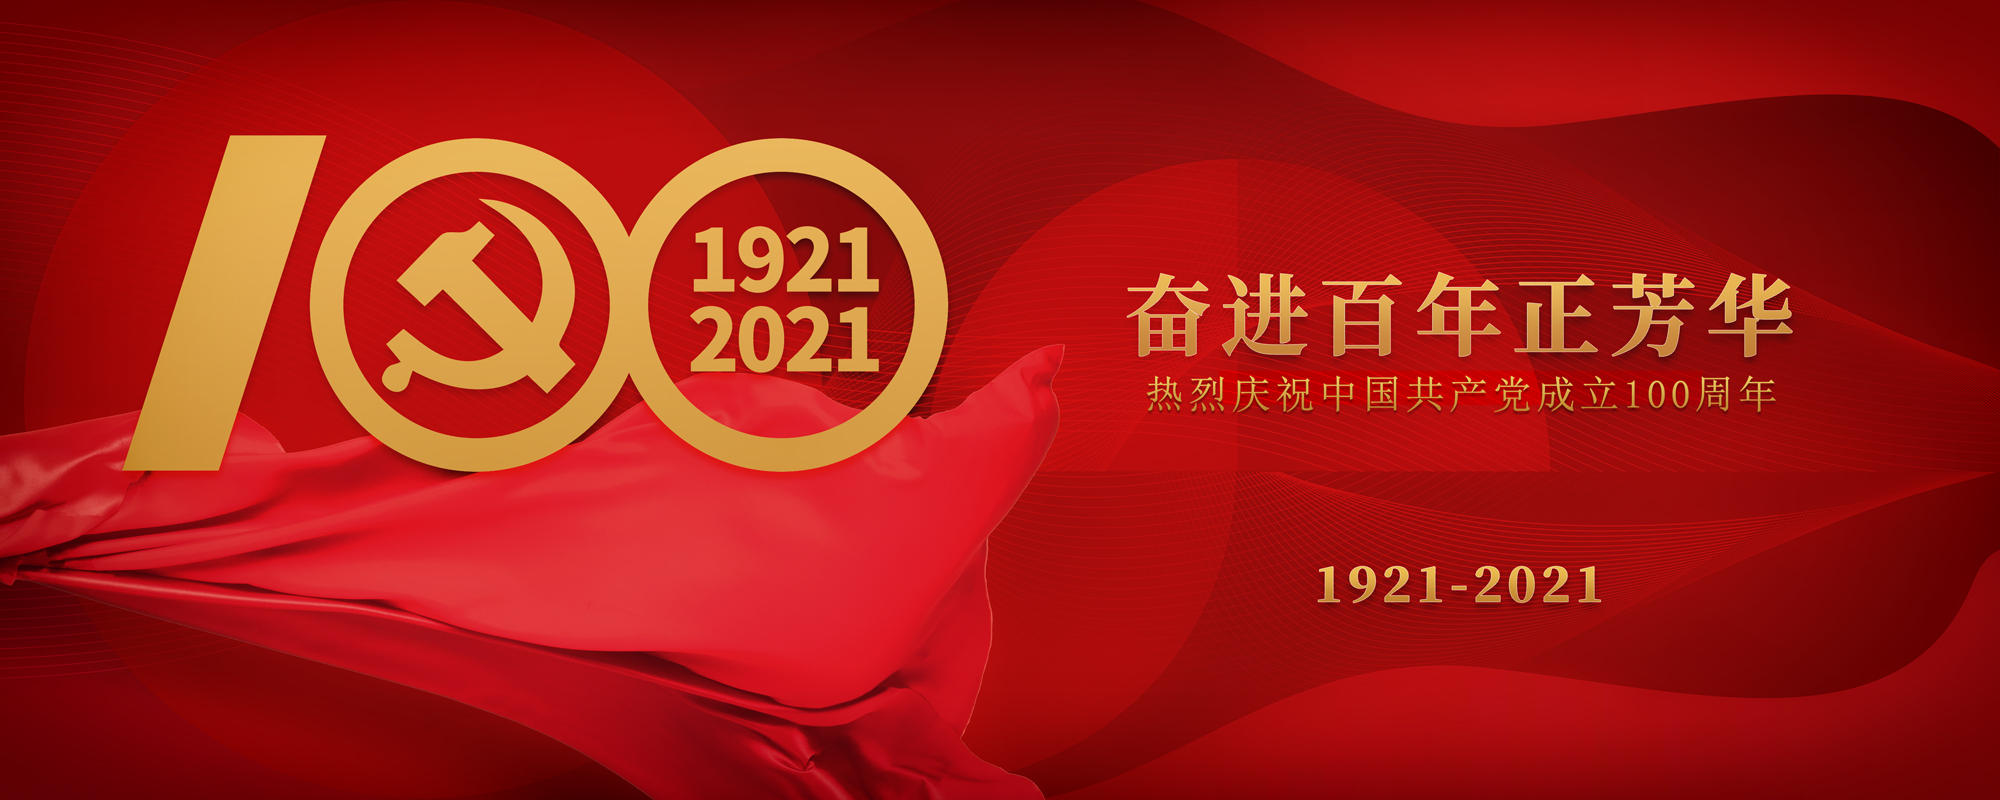 波胆app官网体育祝贺建党100周年